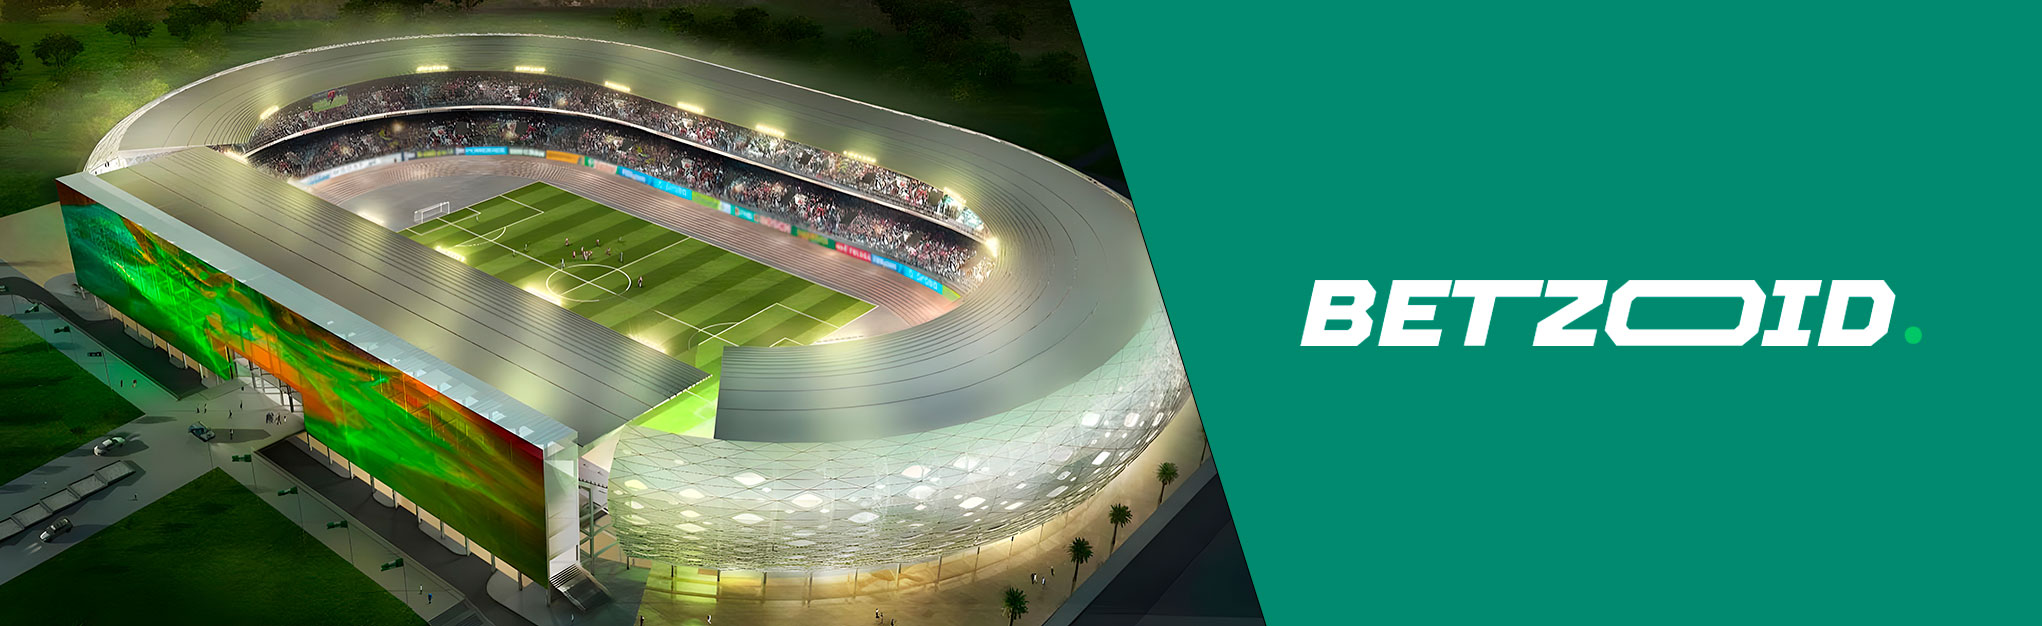 Nigerian stadium and Betzoid logo.